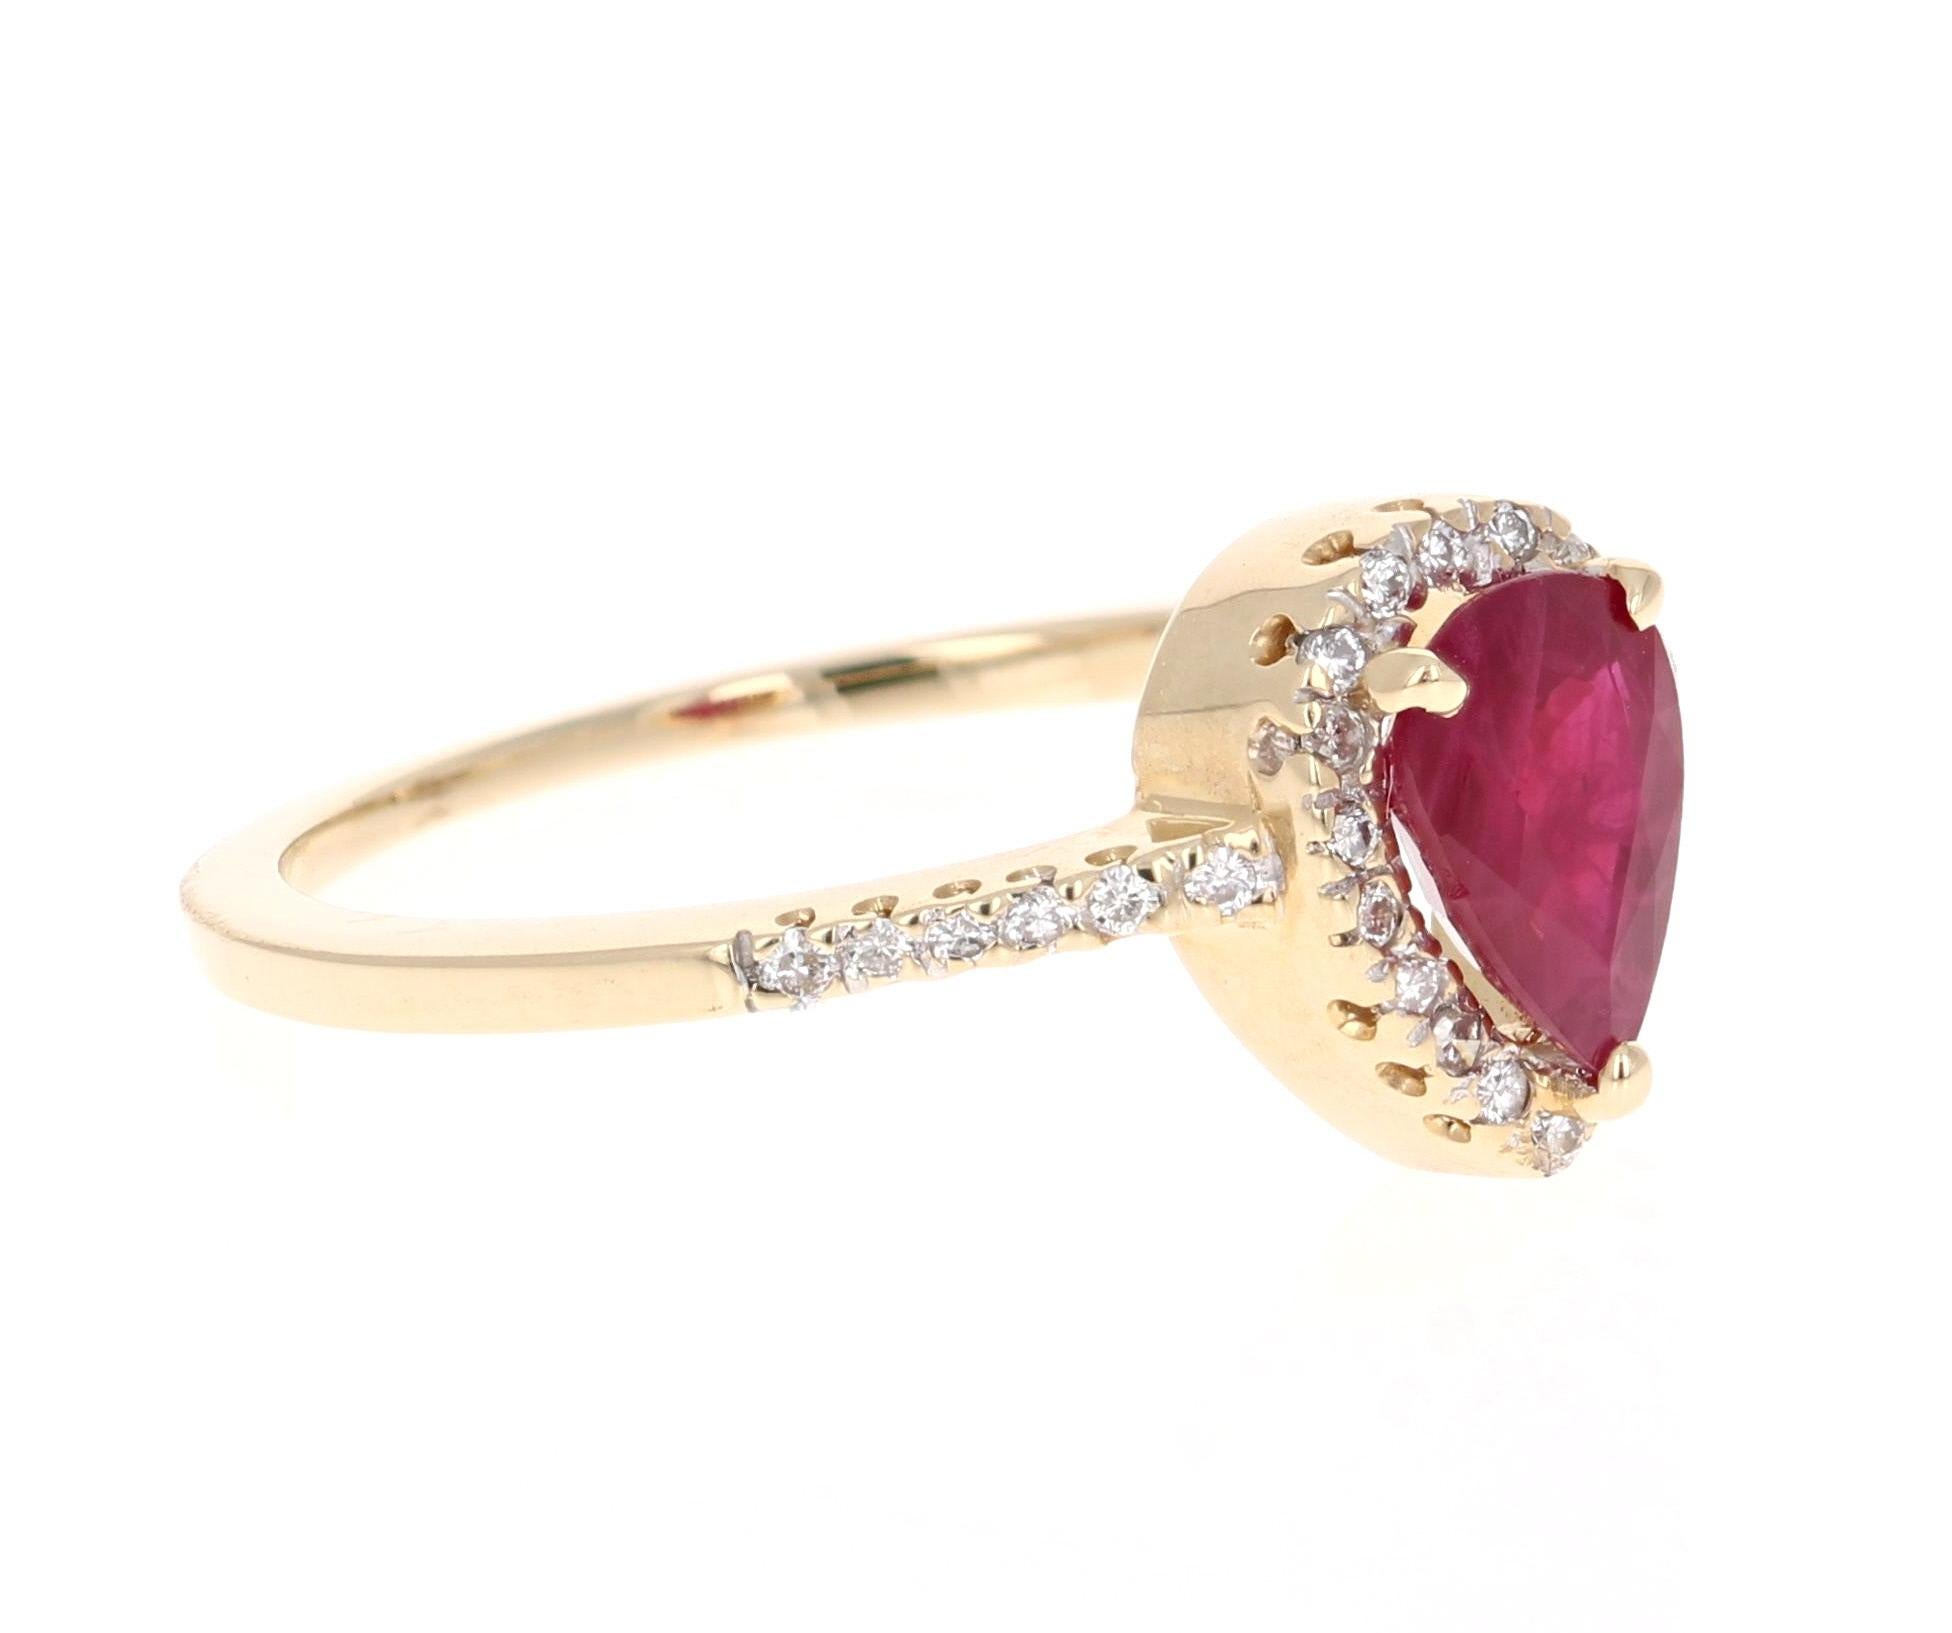 Ein schlichter, aber schöner Ring mit einem 0,88 Karat schweren Rubin im Birnenschliff als Mittelpunkt und 32 Diamanten im Rundschliff mit einem Gewicht von 0,20 Karat. Das Gesamtkaratgewicht des Rings beträgt 1,08 Karat.

Der Ring ist aus 14 Karat